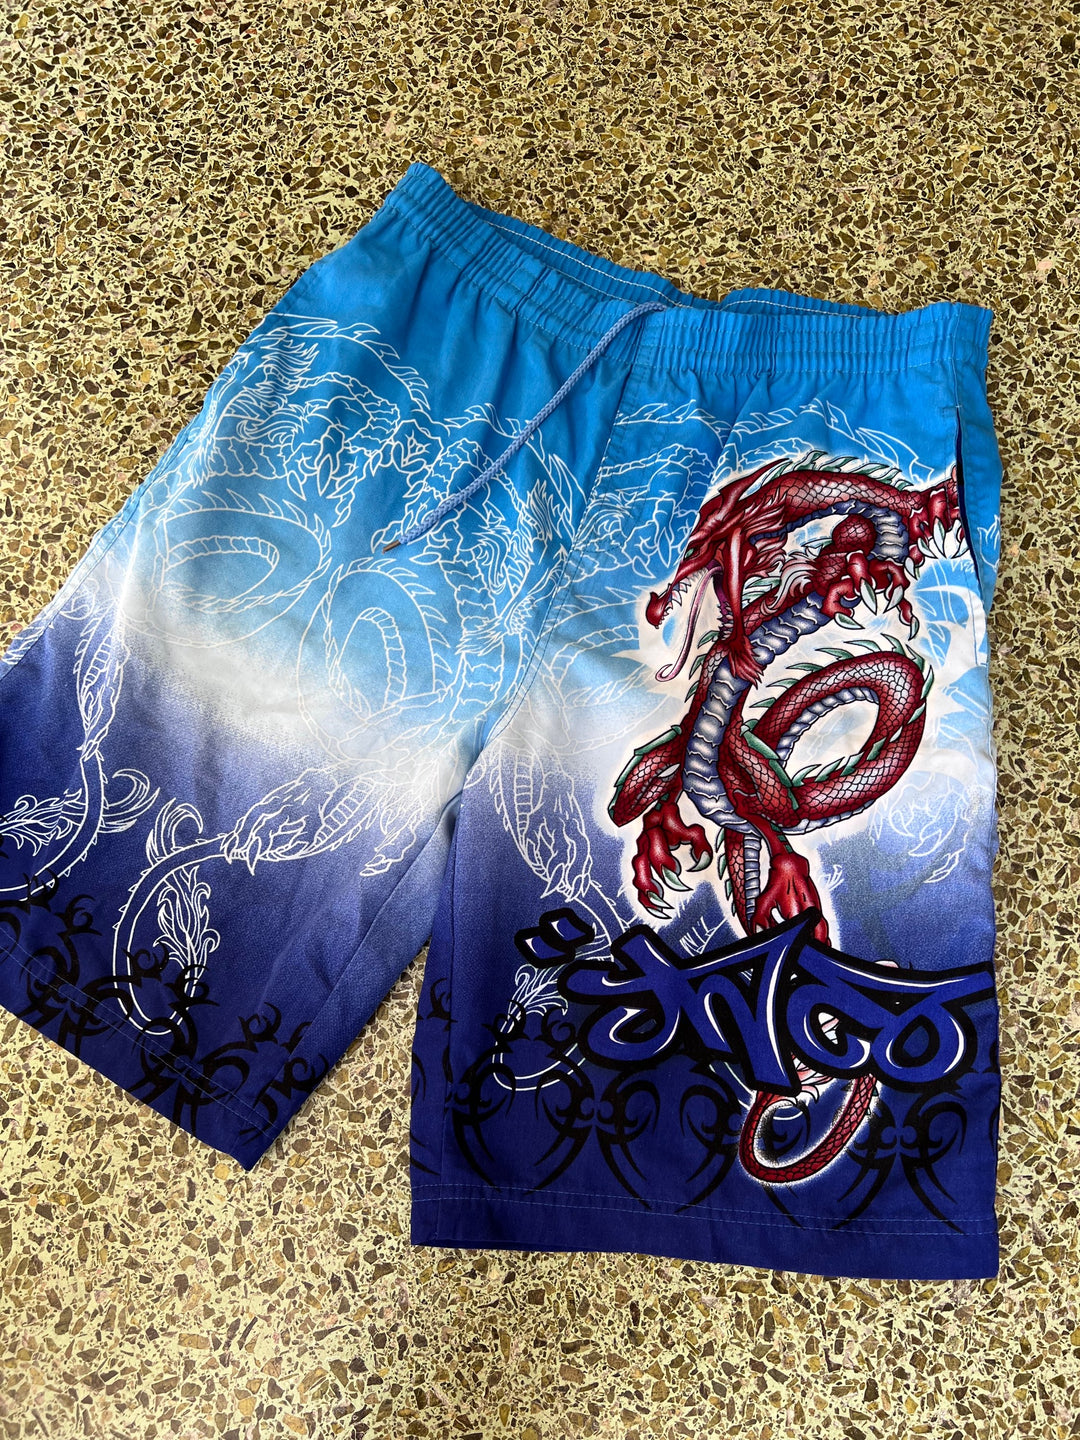 Tribal Dragon Print Shorts Men's Medium